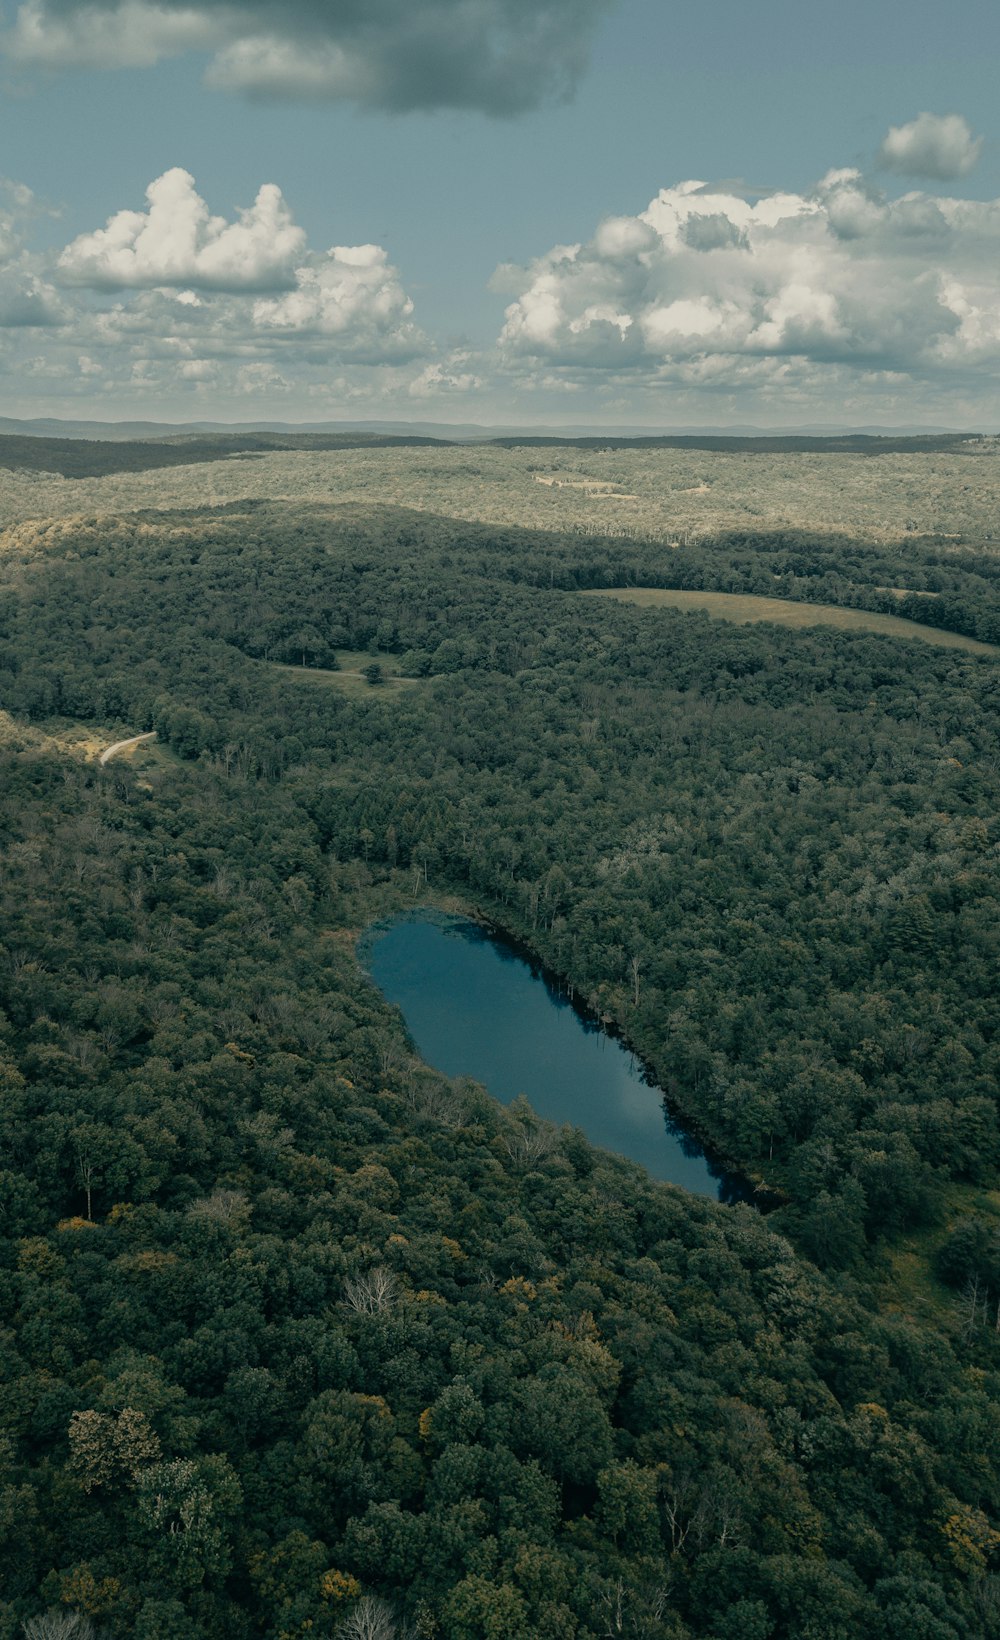 Vista aérea del lago rodeado de árboles verdes durante el día